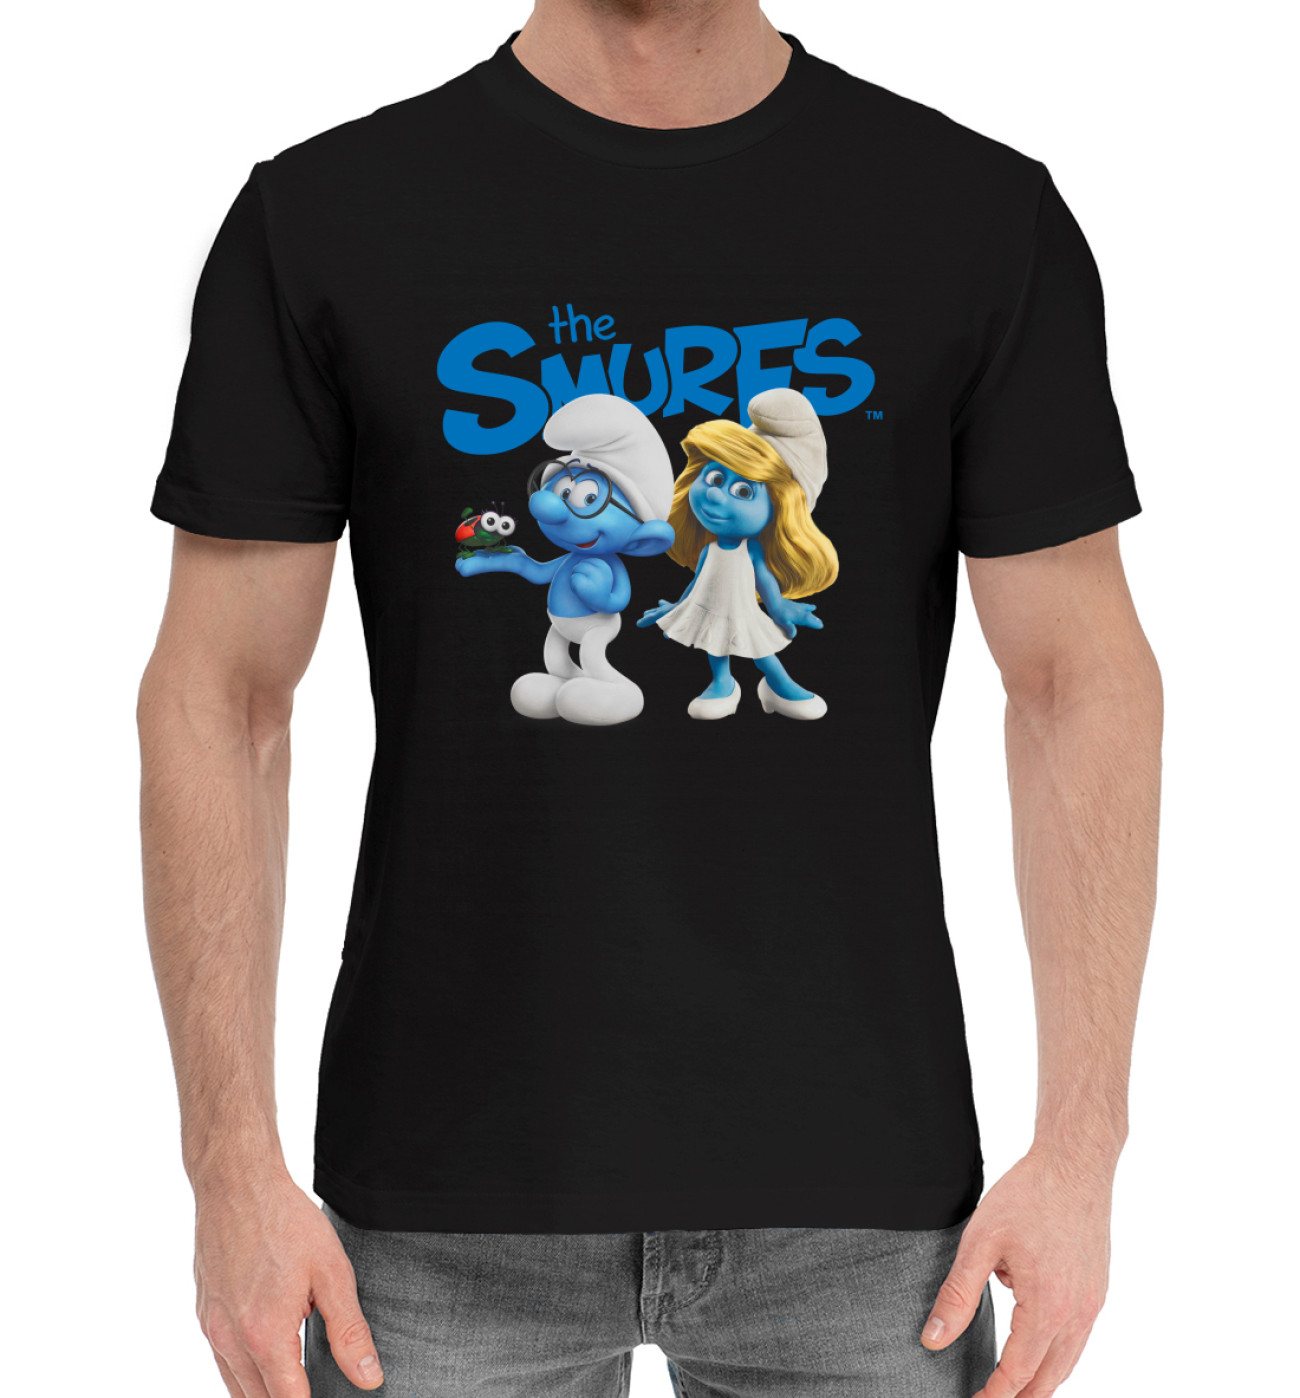 Мужская Хлопковая футболка The Smurfs, артикул: MFR-679658-hfu-2